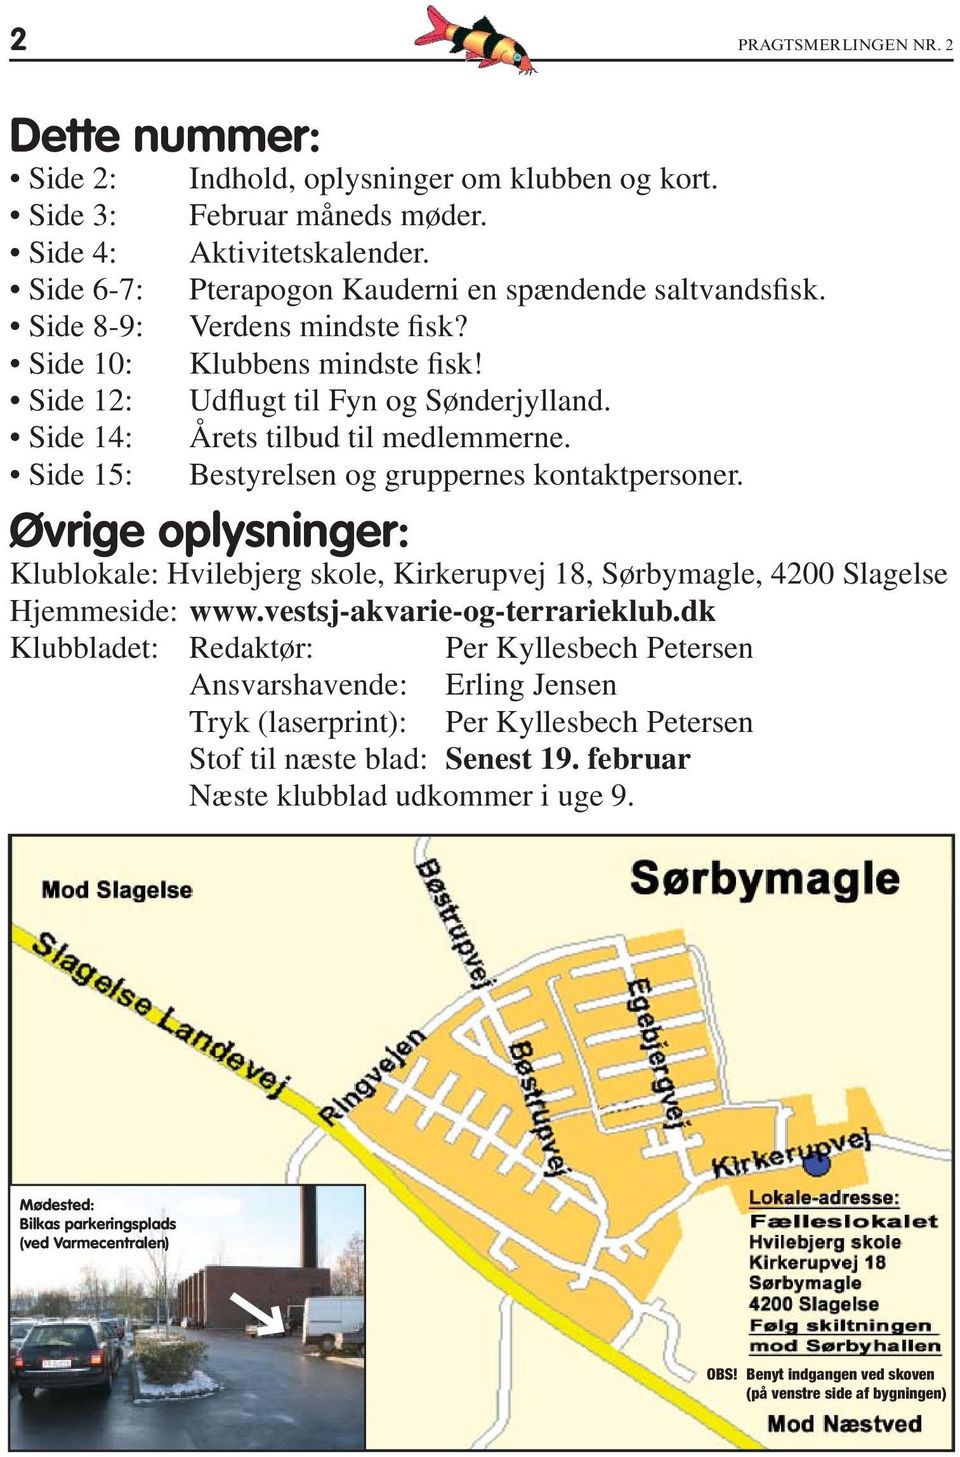 Øvrige oplysninger: Klublokale: Hvilebjerg skole, Kirkerupvej 18, Sørbymagle, 4200 Slagelse Hjemmeside: www.vestsj-akvarie-og-terrarieklub.